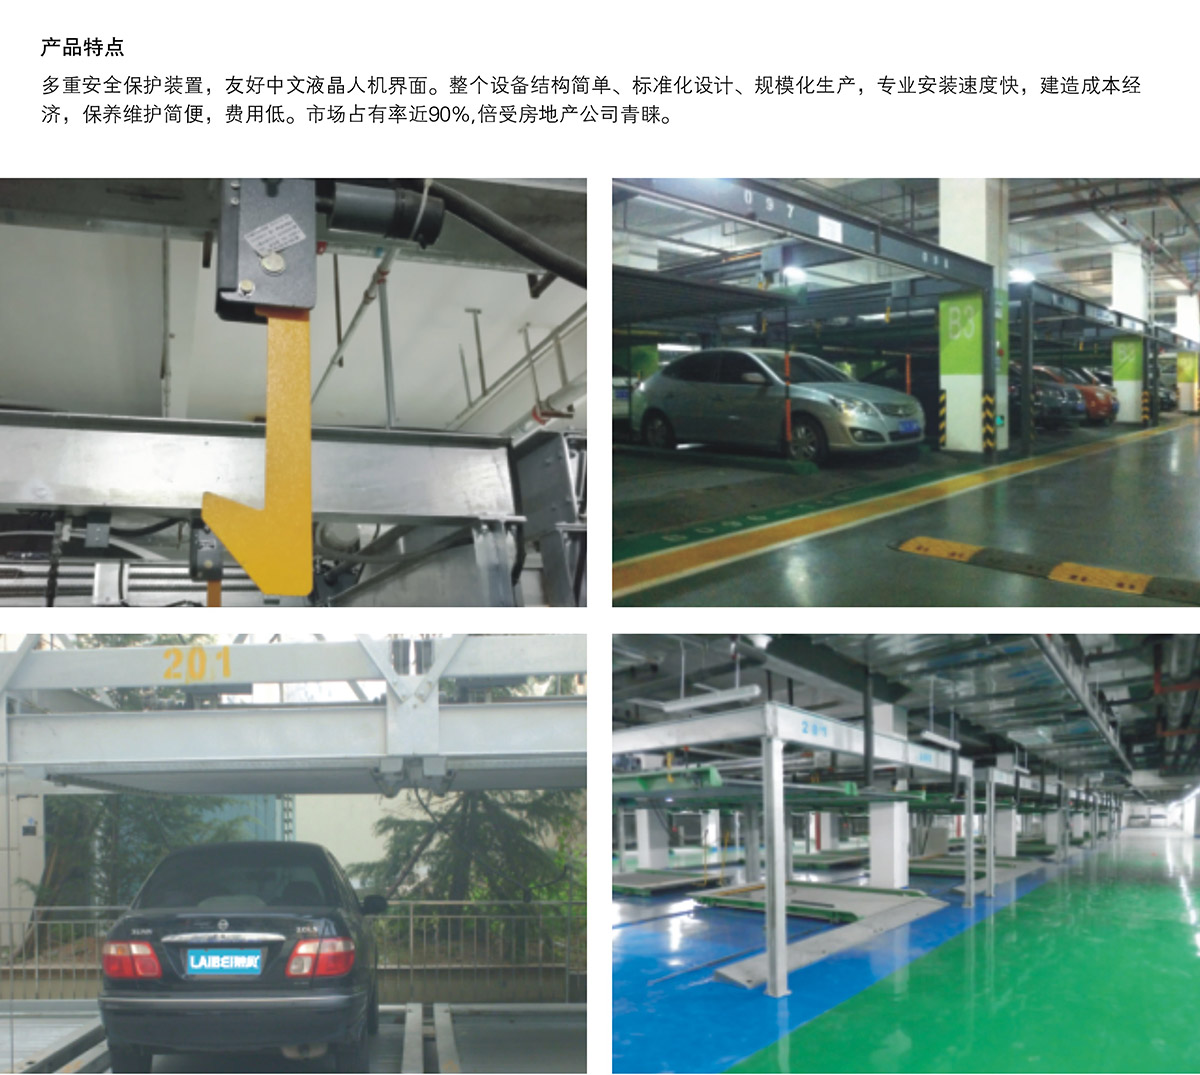 机械车库单列PSH2二层升降横移机械停车设备产品特点.jpg